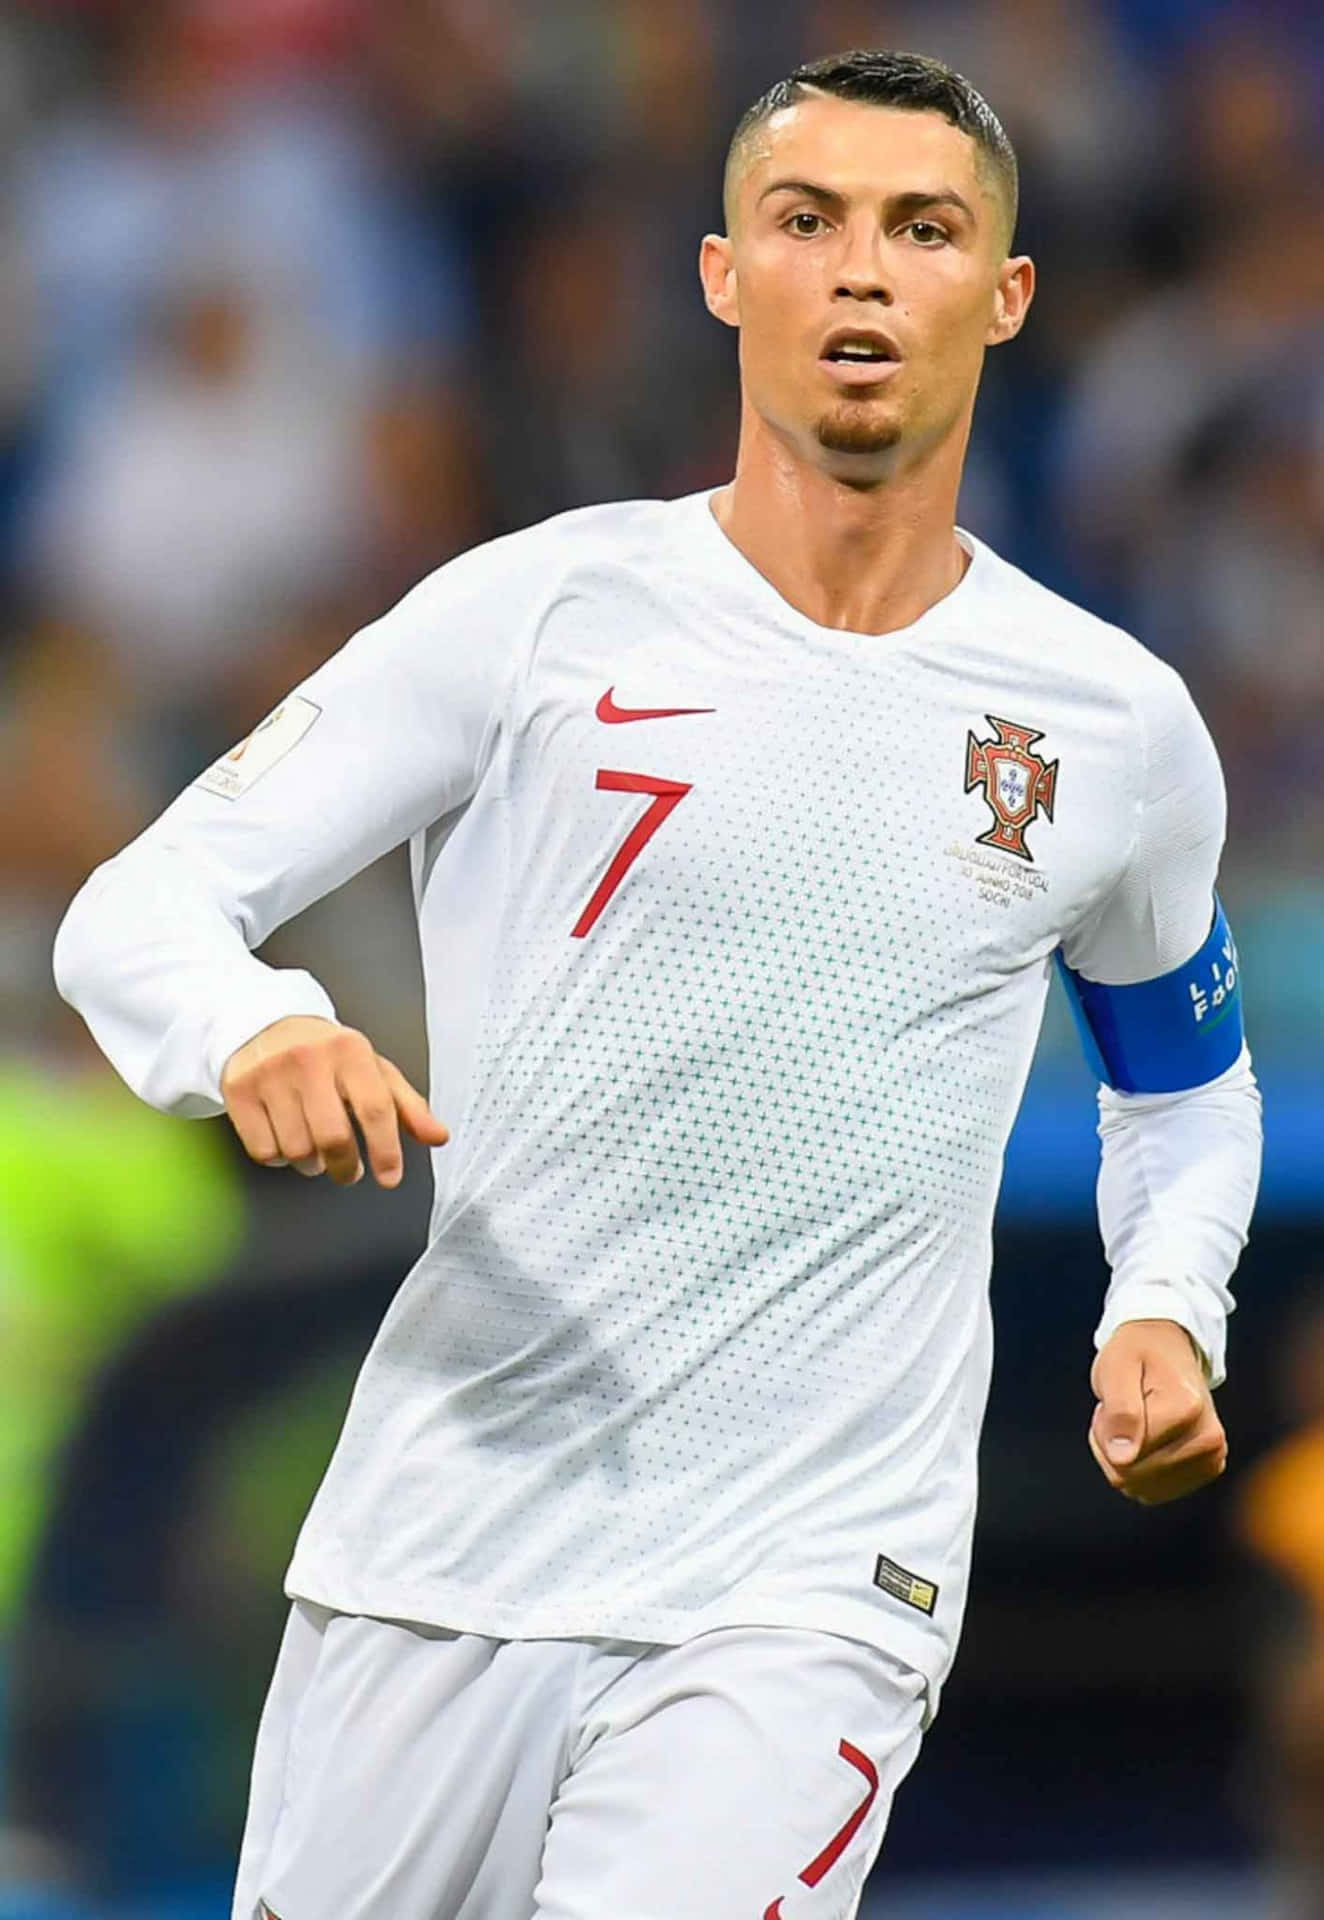 Cristiano Ronaldo: The Five-Time Ballon d'Or Winner